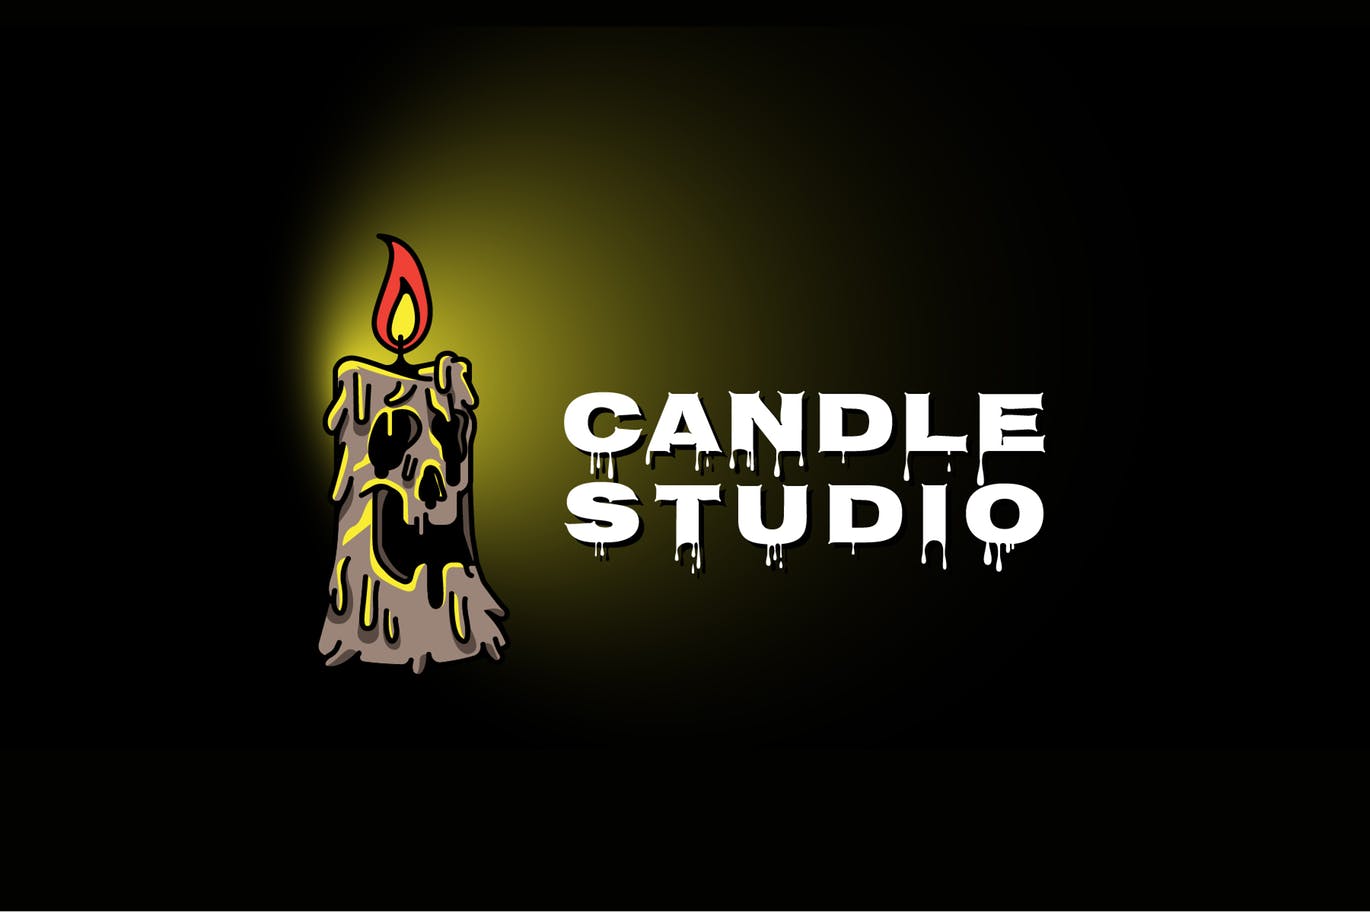 恐怖蜡烛工作室Logo设计蚂蚁素材精选模板 Candle Horror Mascot Logo插图